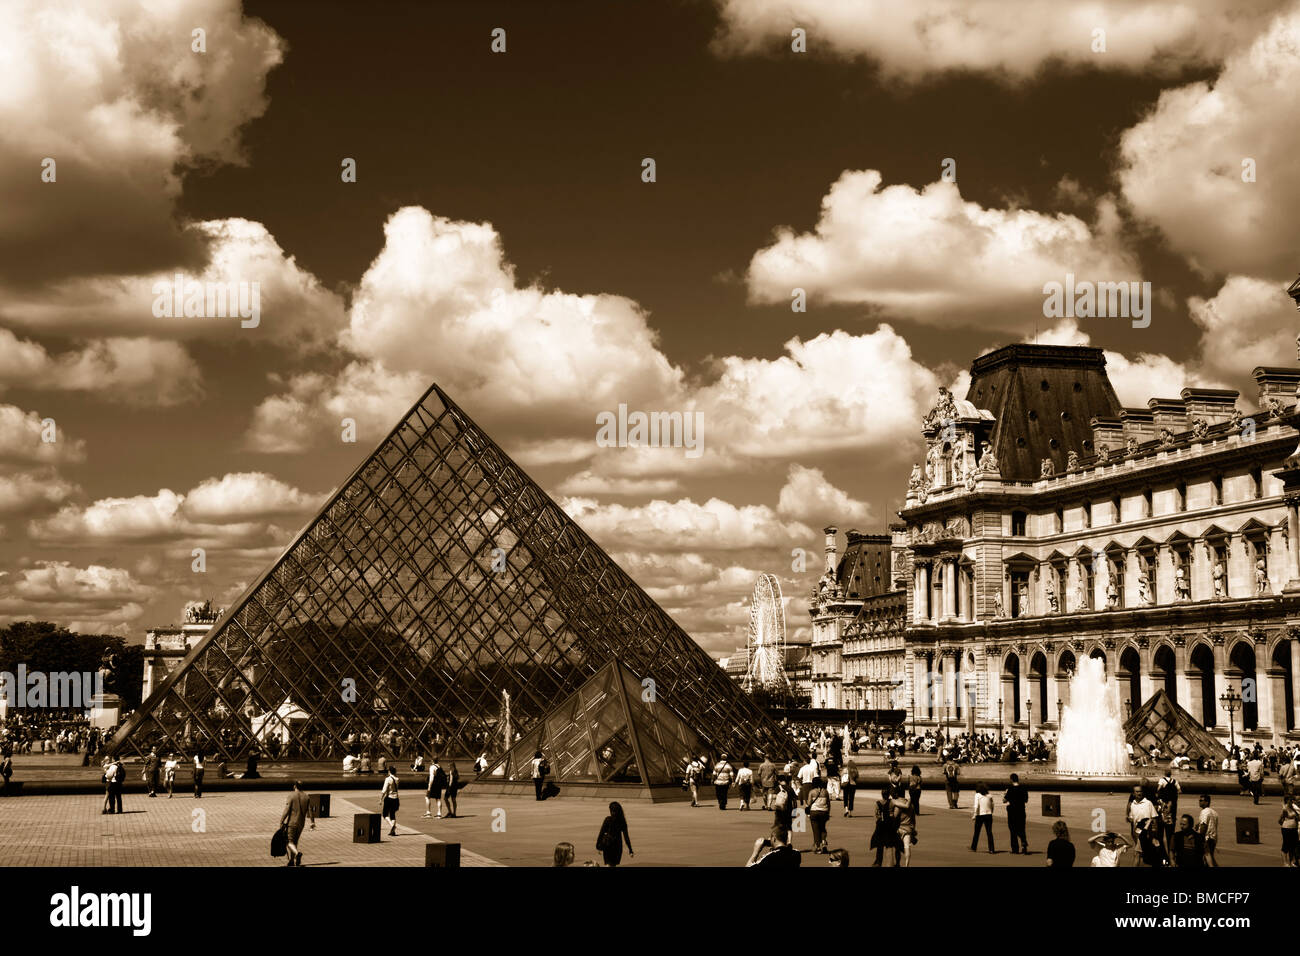 Des noir et blanc Sépia Vue panoramique de la pyramide de verre et de fontaines du musée du Louvre Paris France Banque D'Images